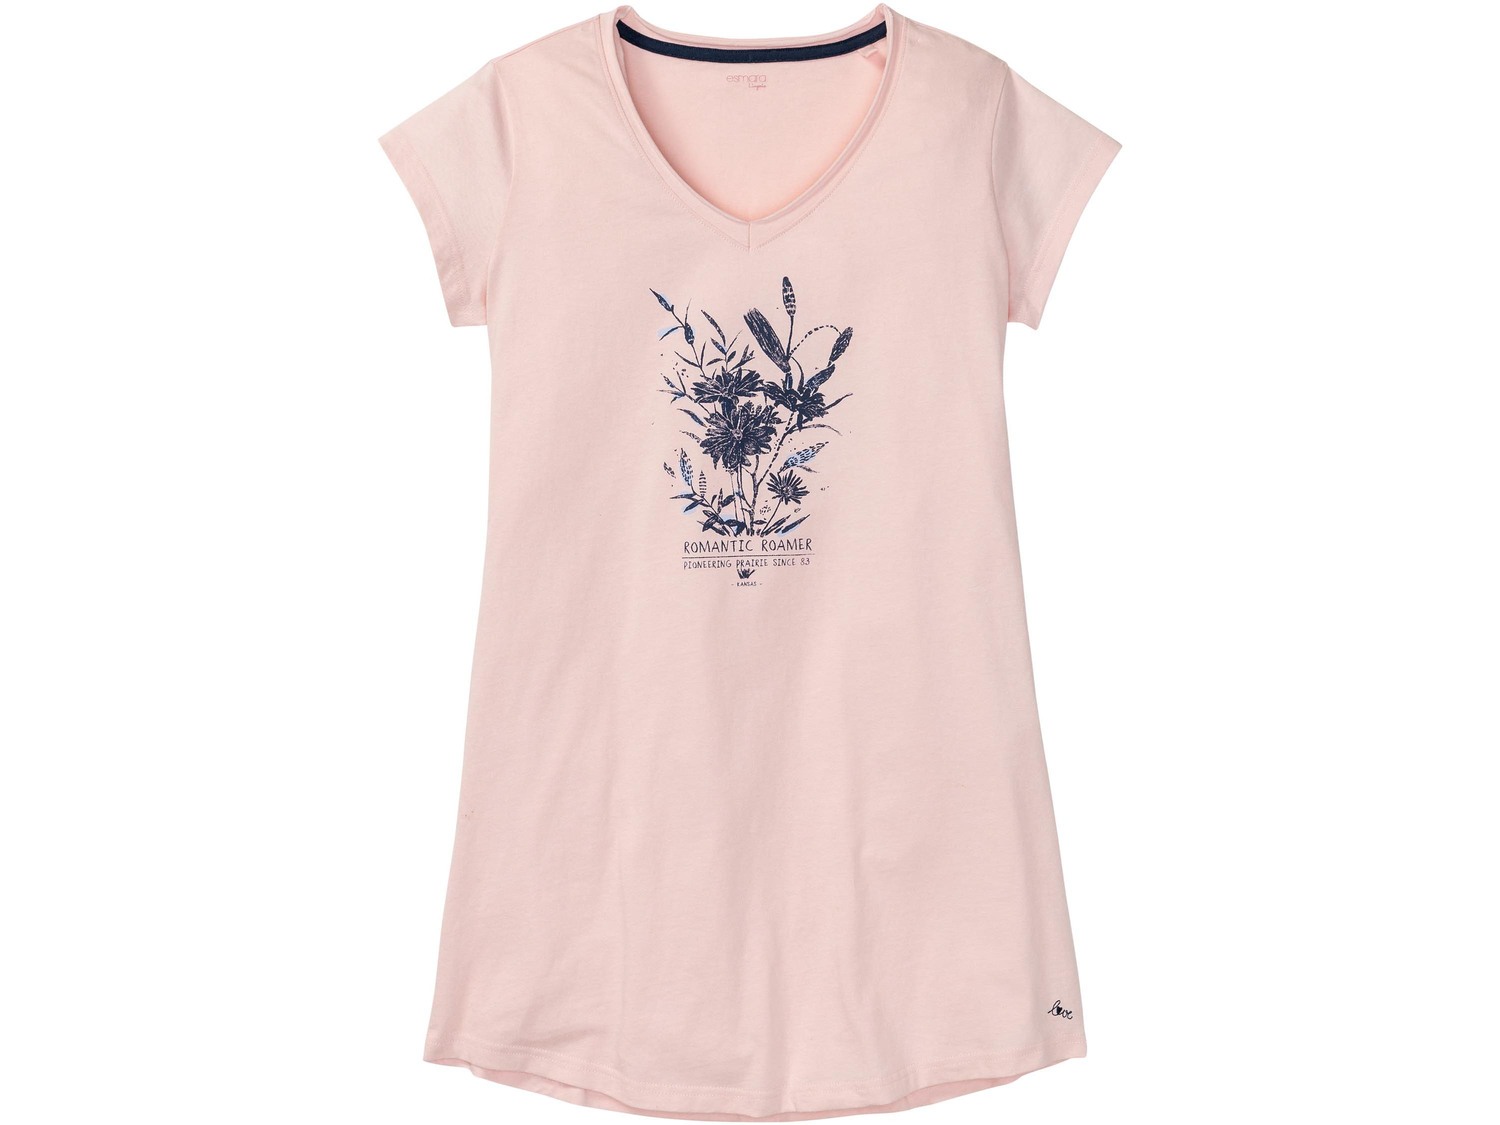 Maxi t-shirt da notte per donna Esmara Lingerie, prezzo 4.99 &#8364;  
-  Puro cotone